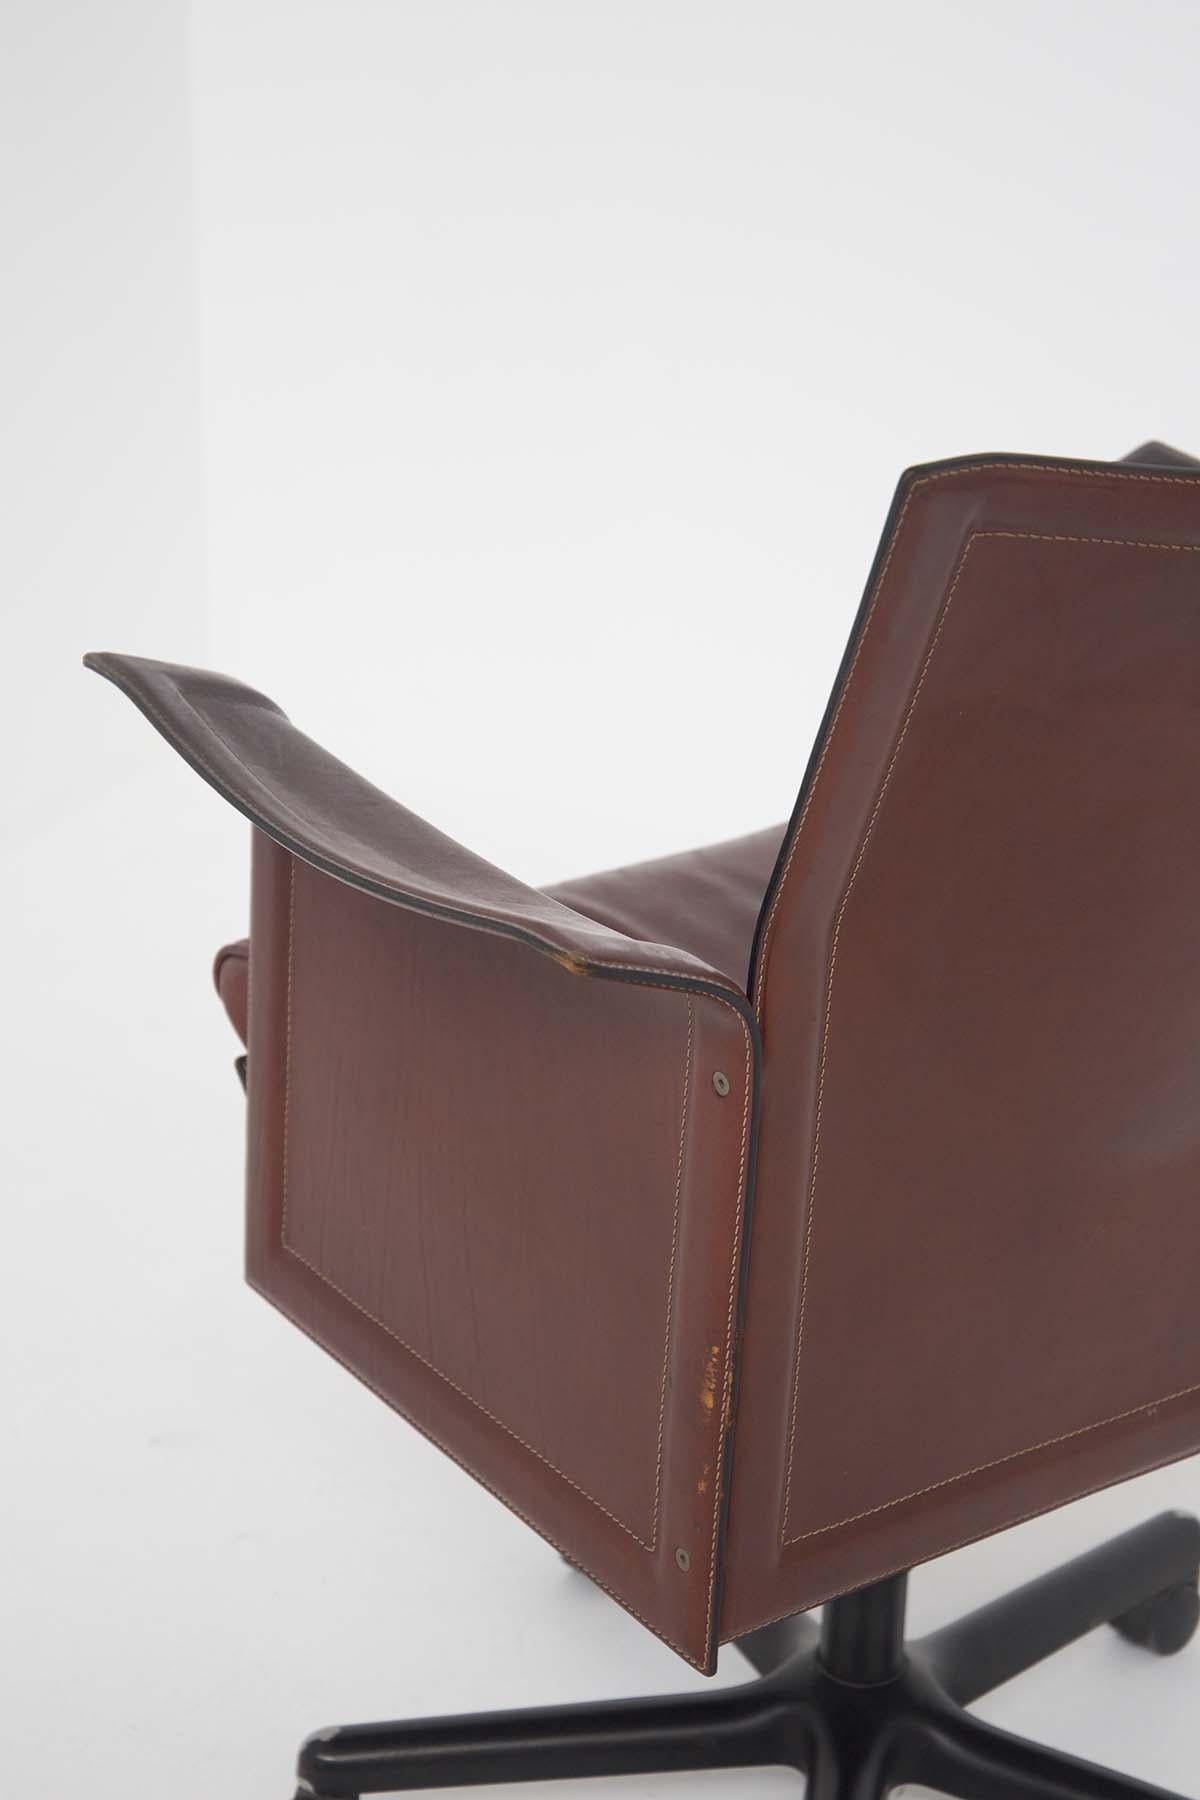 Steel Tito Agnoli for Matteograssi Desk Armchair Korium in Leather, Label